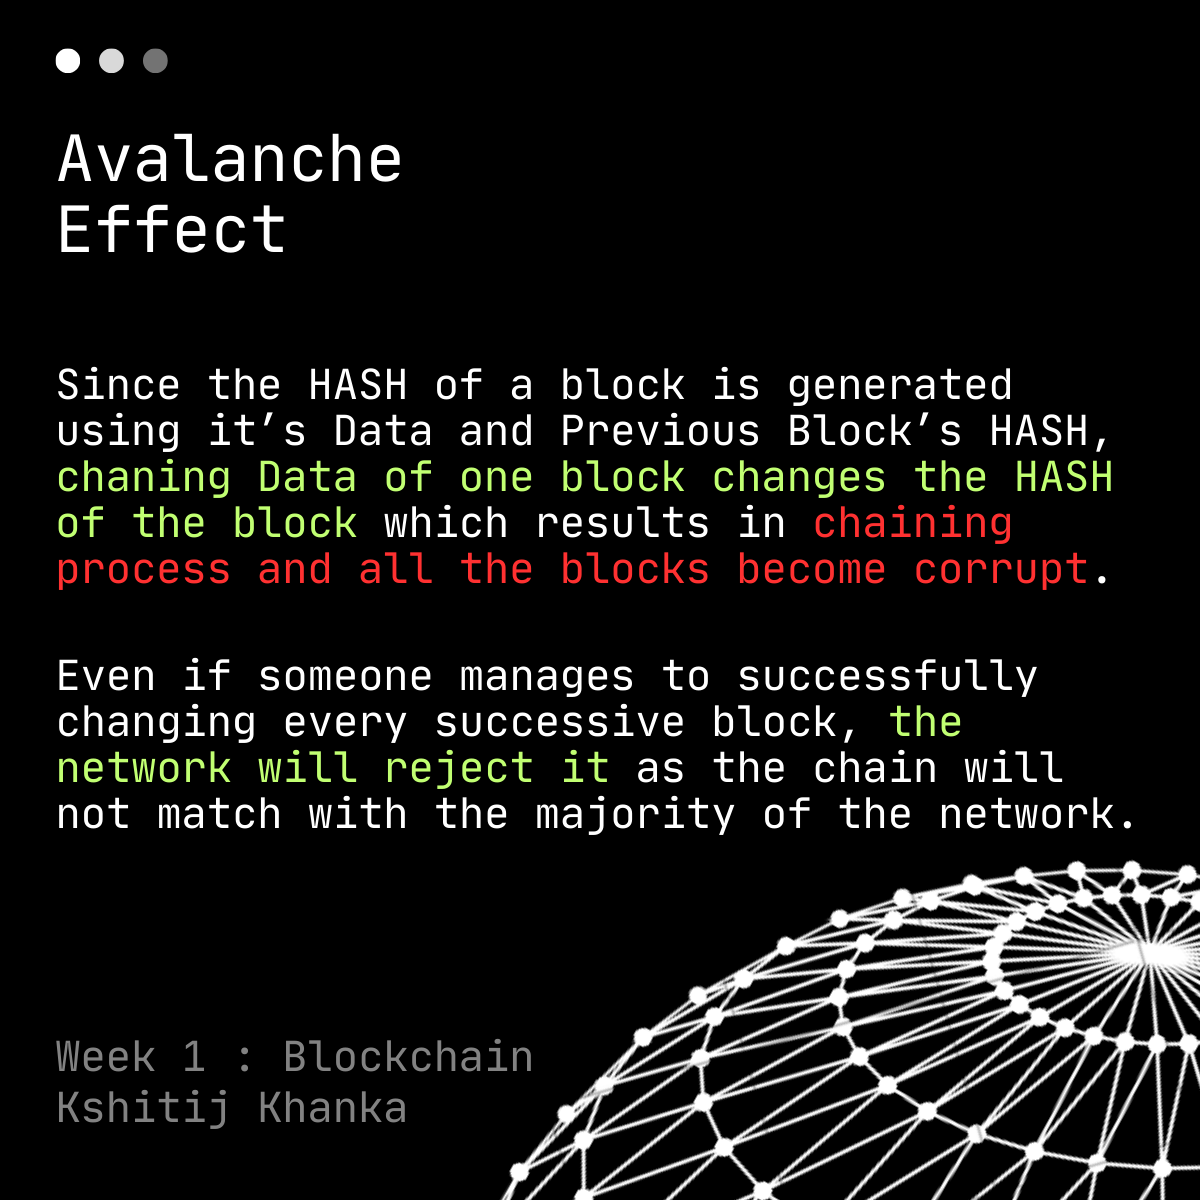 Explaining Avalanche effect